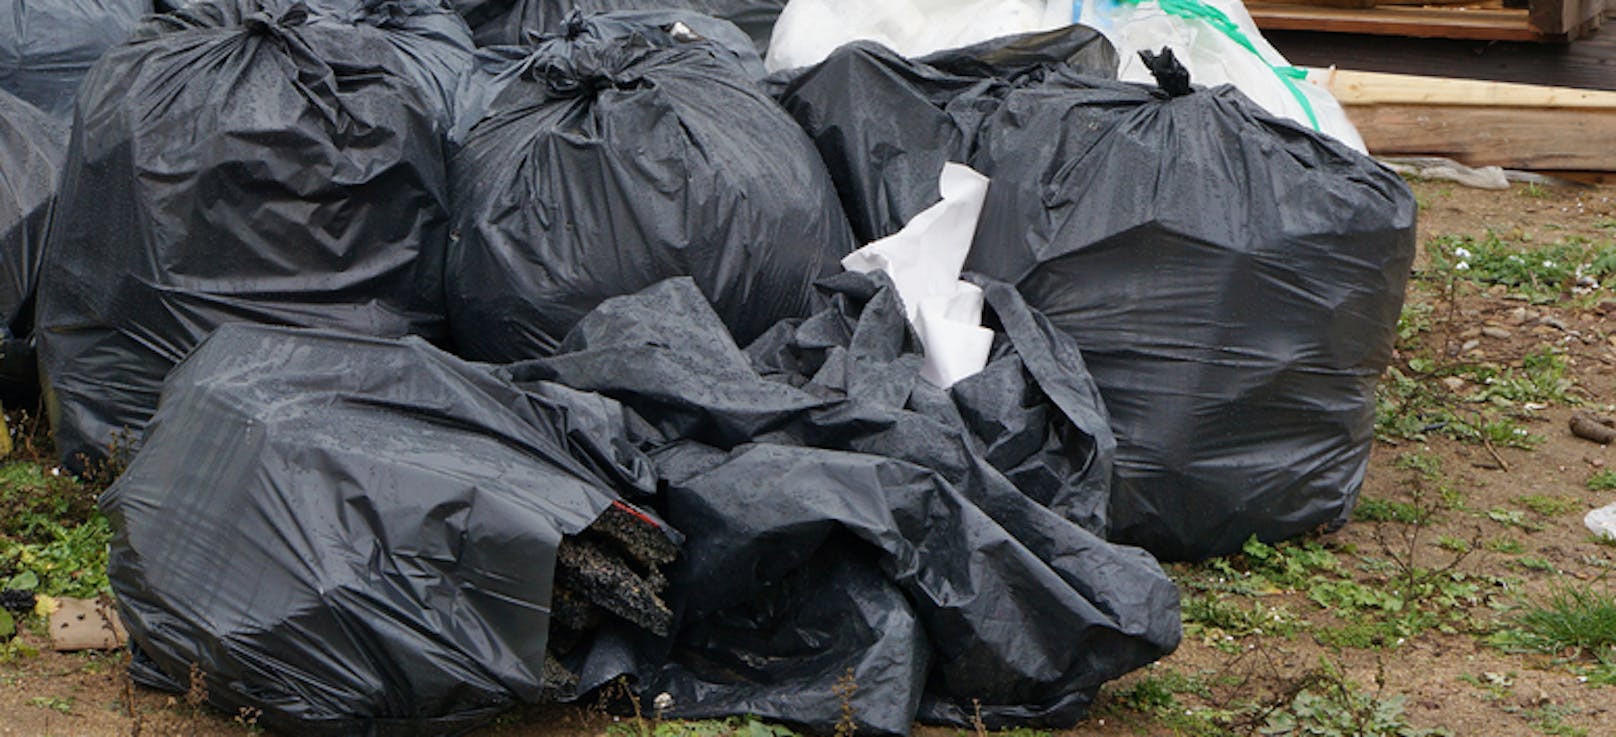 Ein junger Mann entsorgte neun große Müllsäcke einfach in einem Feld. (Symbolfoto)